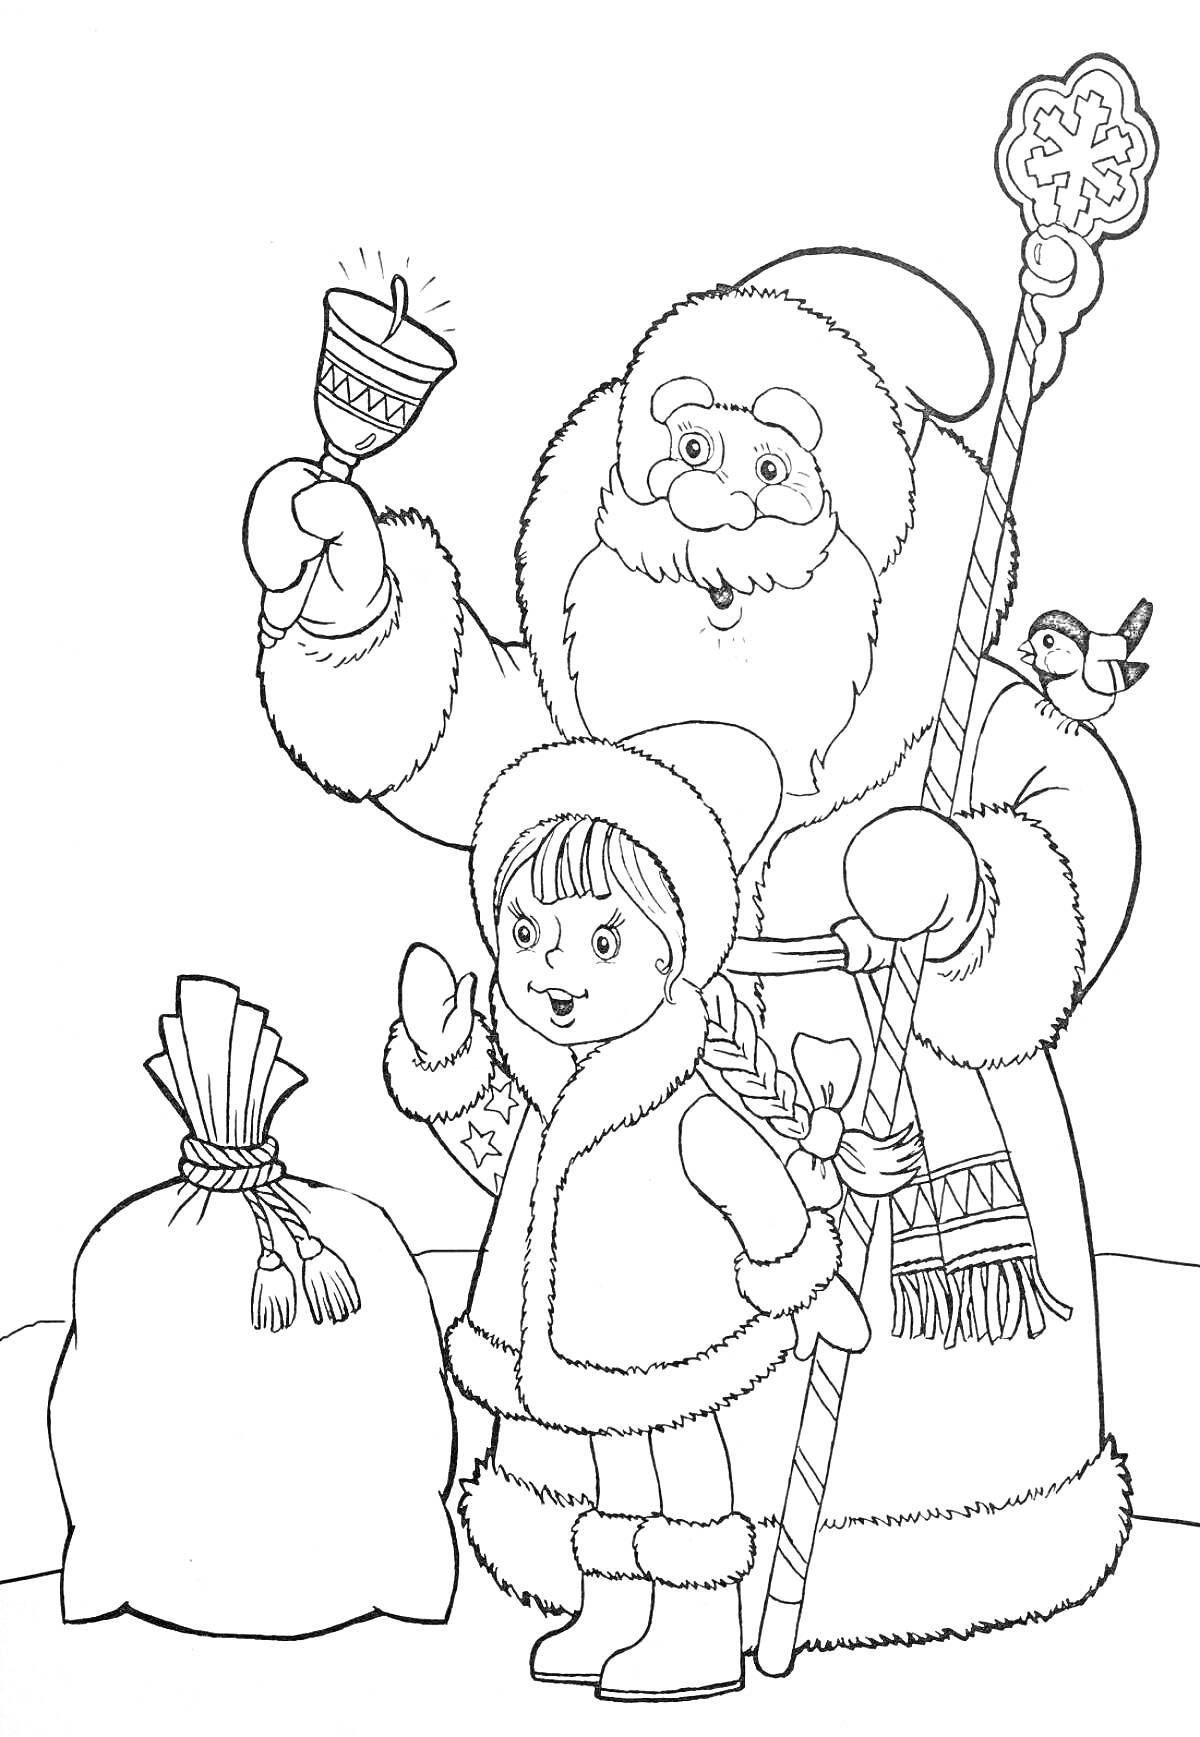 Раскраска Дед Мороз с посохом и колокольчиком, Снегурочка, мешок с подарками, снегирь